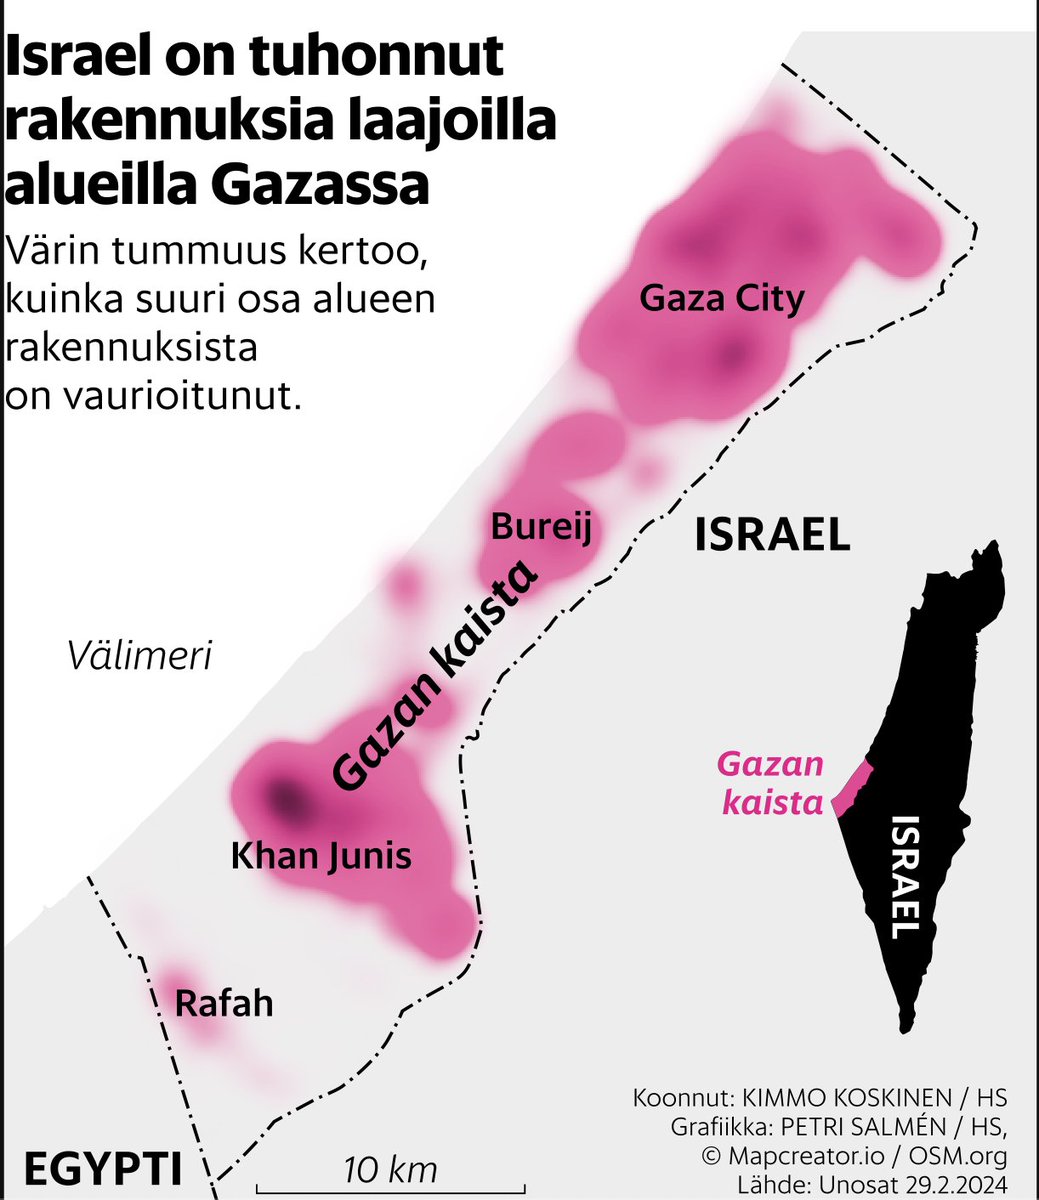 Muuten hyvä artikkeli kansanmurha teemasta, mutta Hesarin karttatiimille tiedoksi, että mustalla merkitty alue ei ole Israel. Kartta sisältää Israelin lisäksi sen miehittämän Itä-Jerusalemin, Länsirannan ja Golanin.